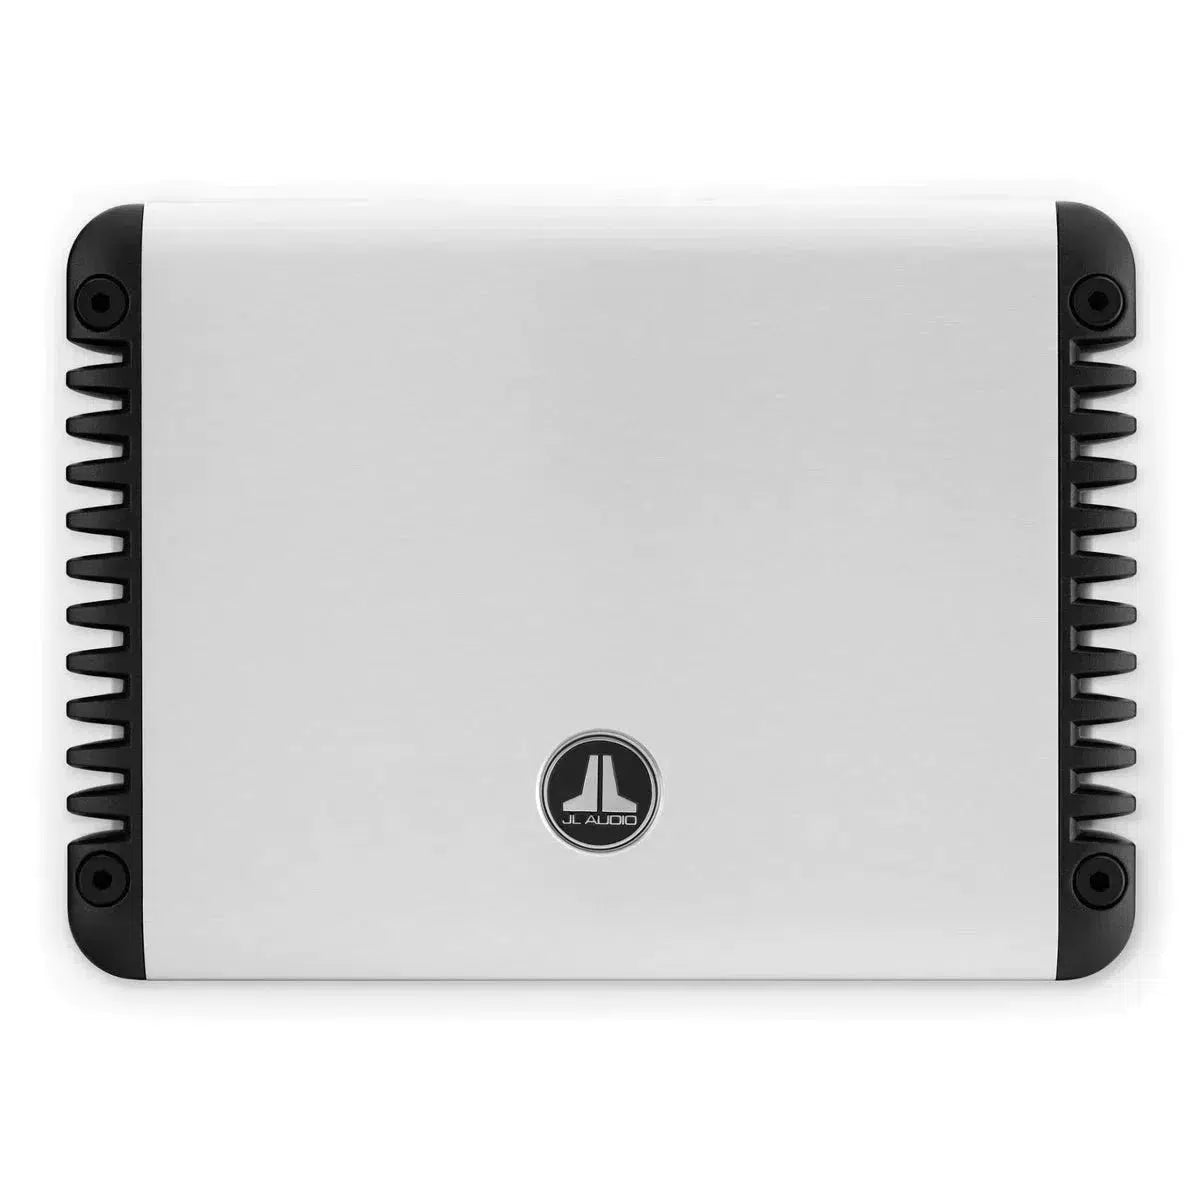 Amplificador de 4 canales JL Audio-HD600/4-Masori.de